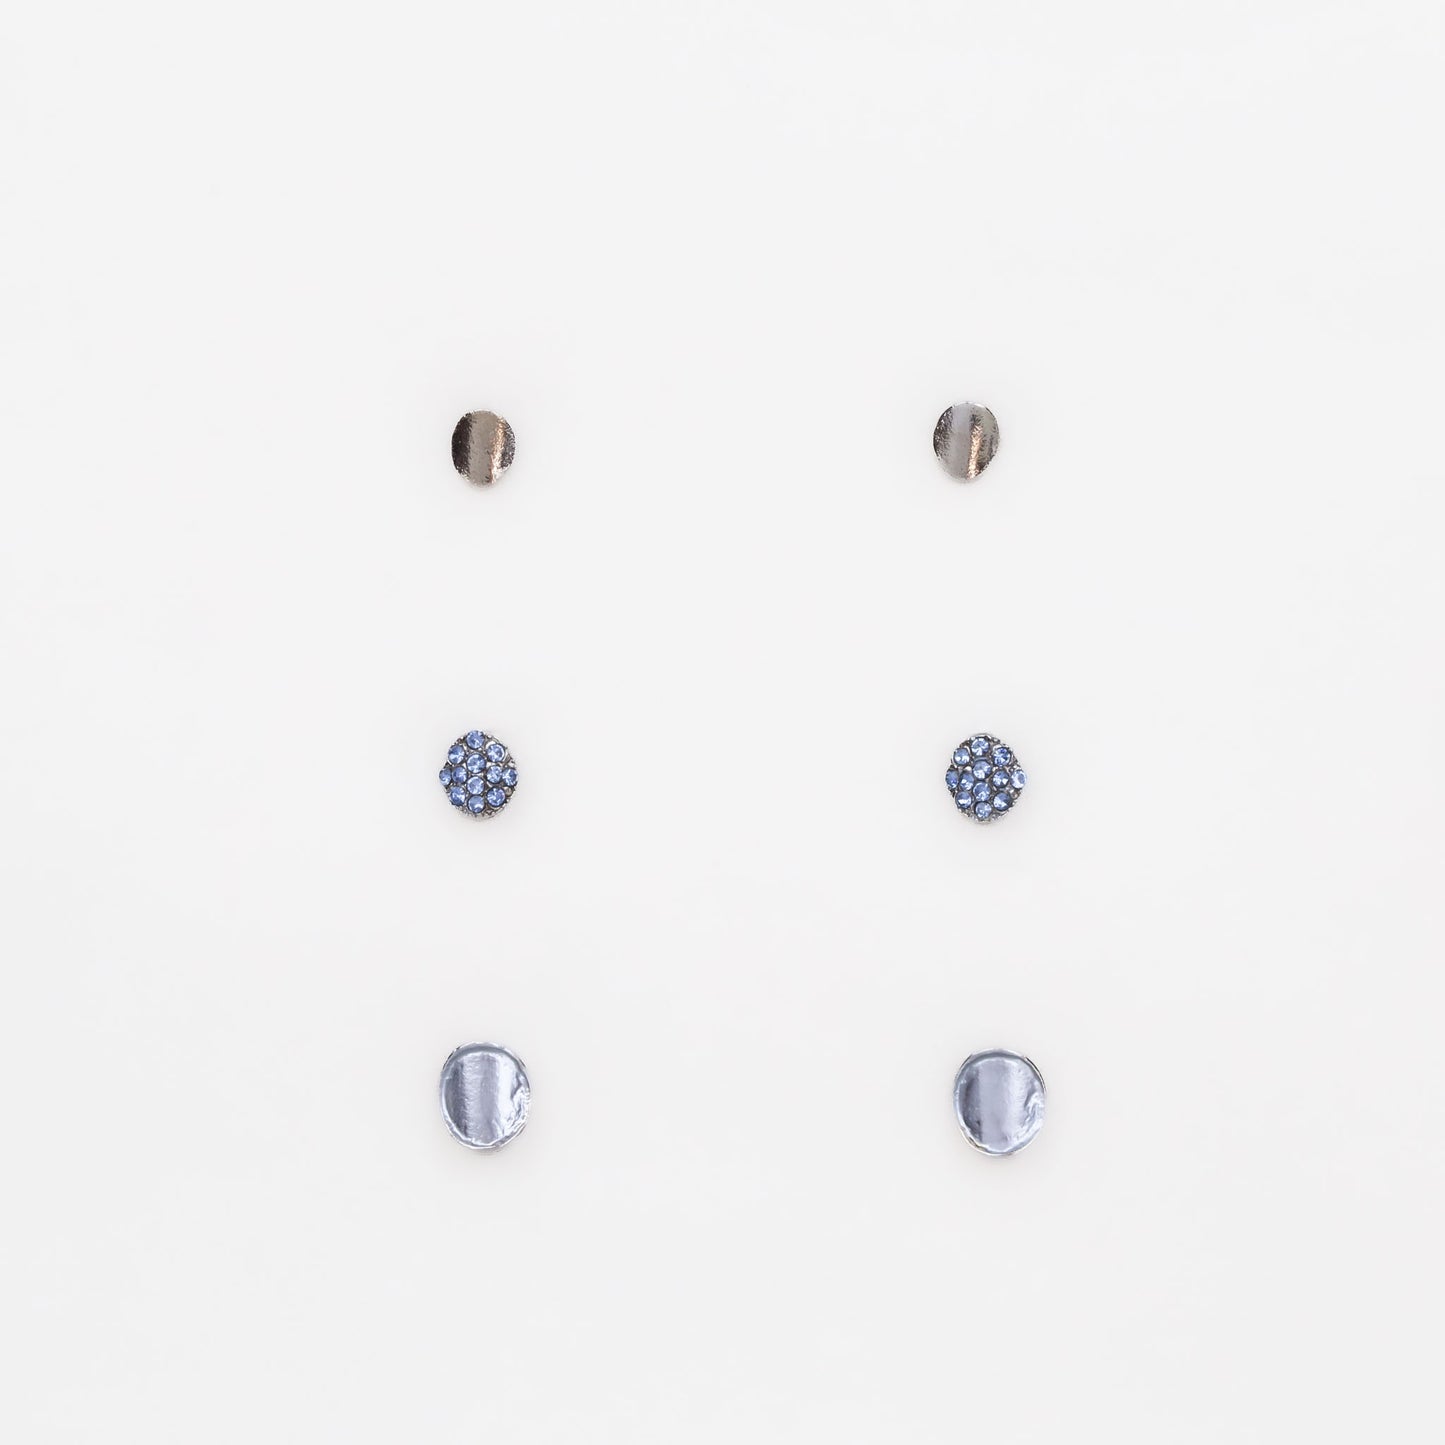 Cercei mici argintii în stil minimal cu ștrasuri albastre, set 3 perechi